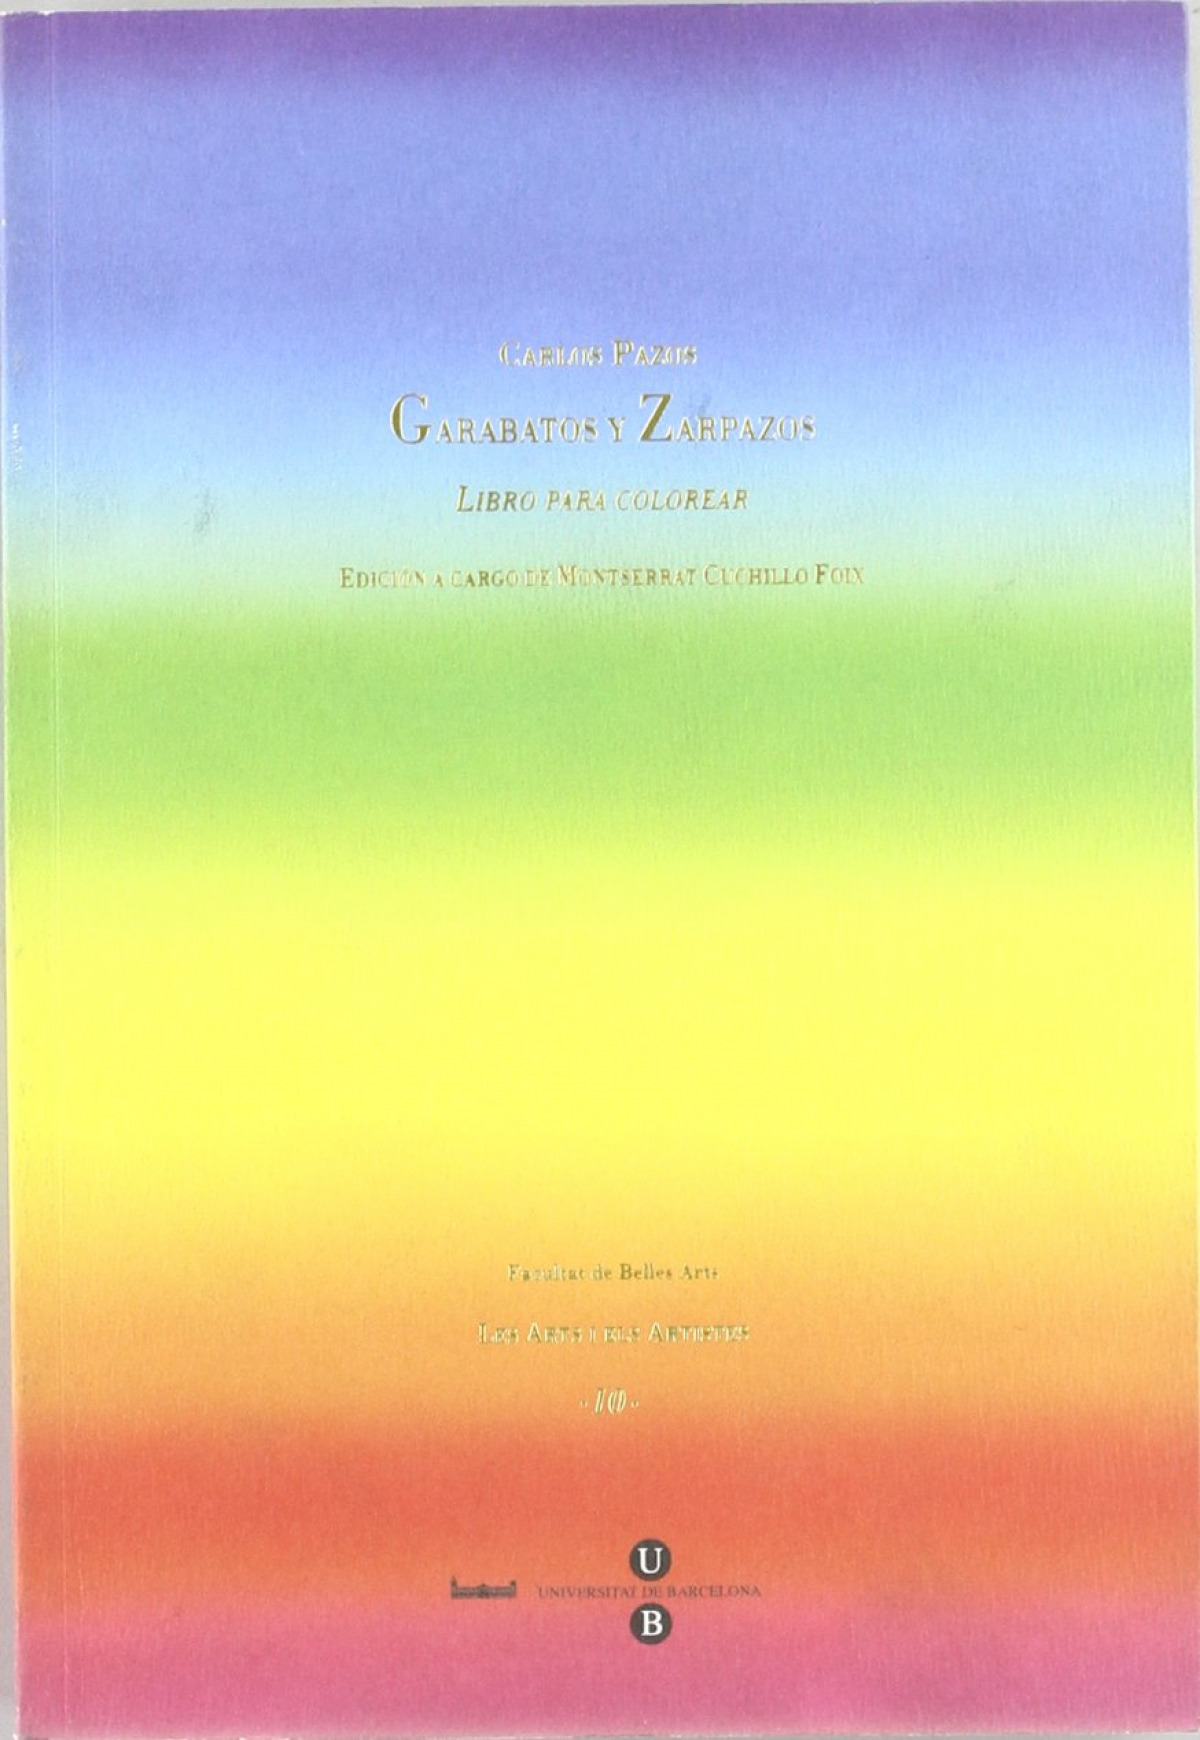 Garabatos y zarpazos. libro para colorear - Carlos Pazos